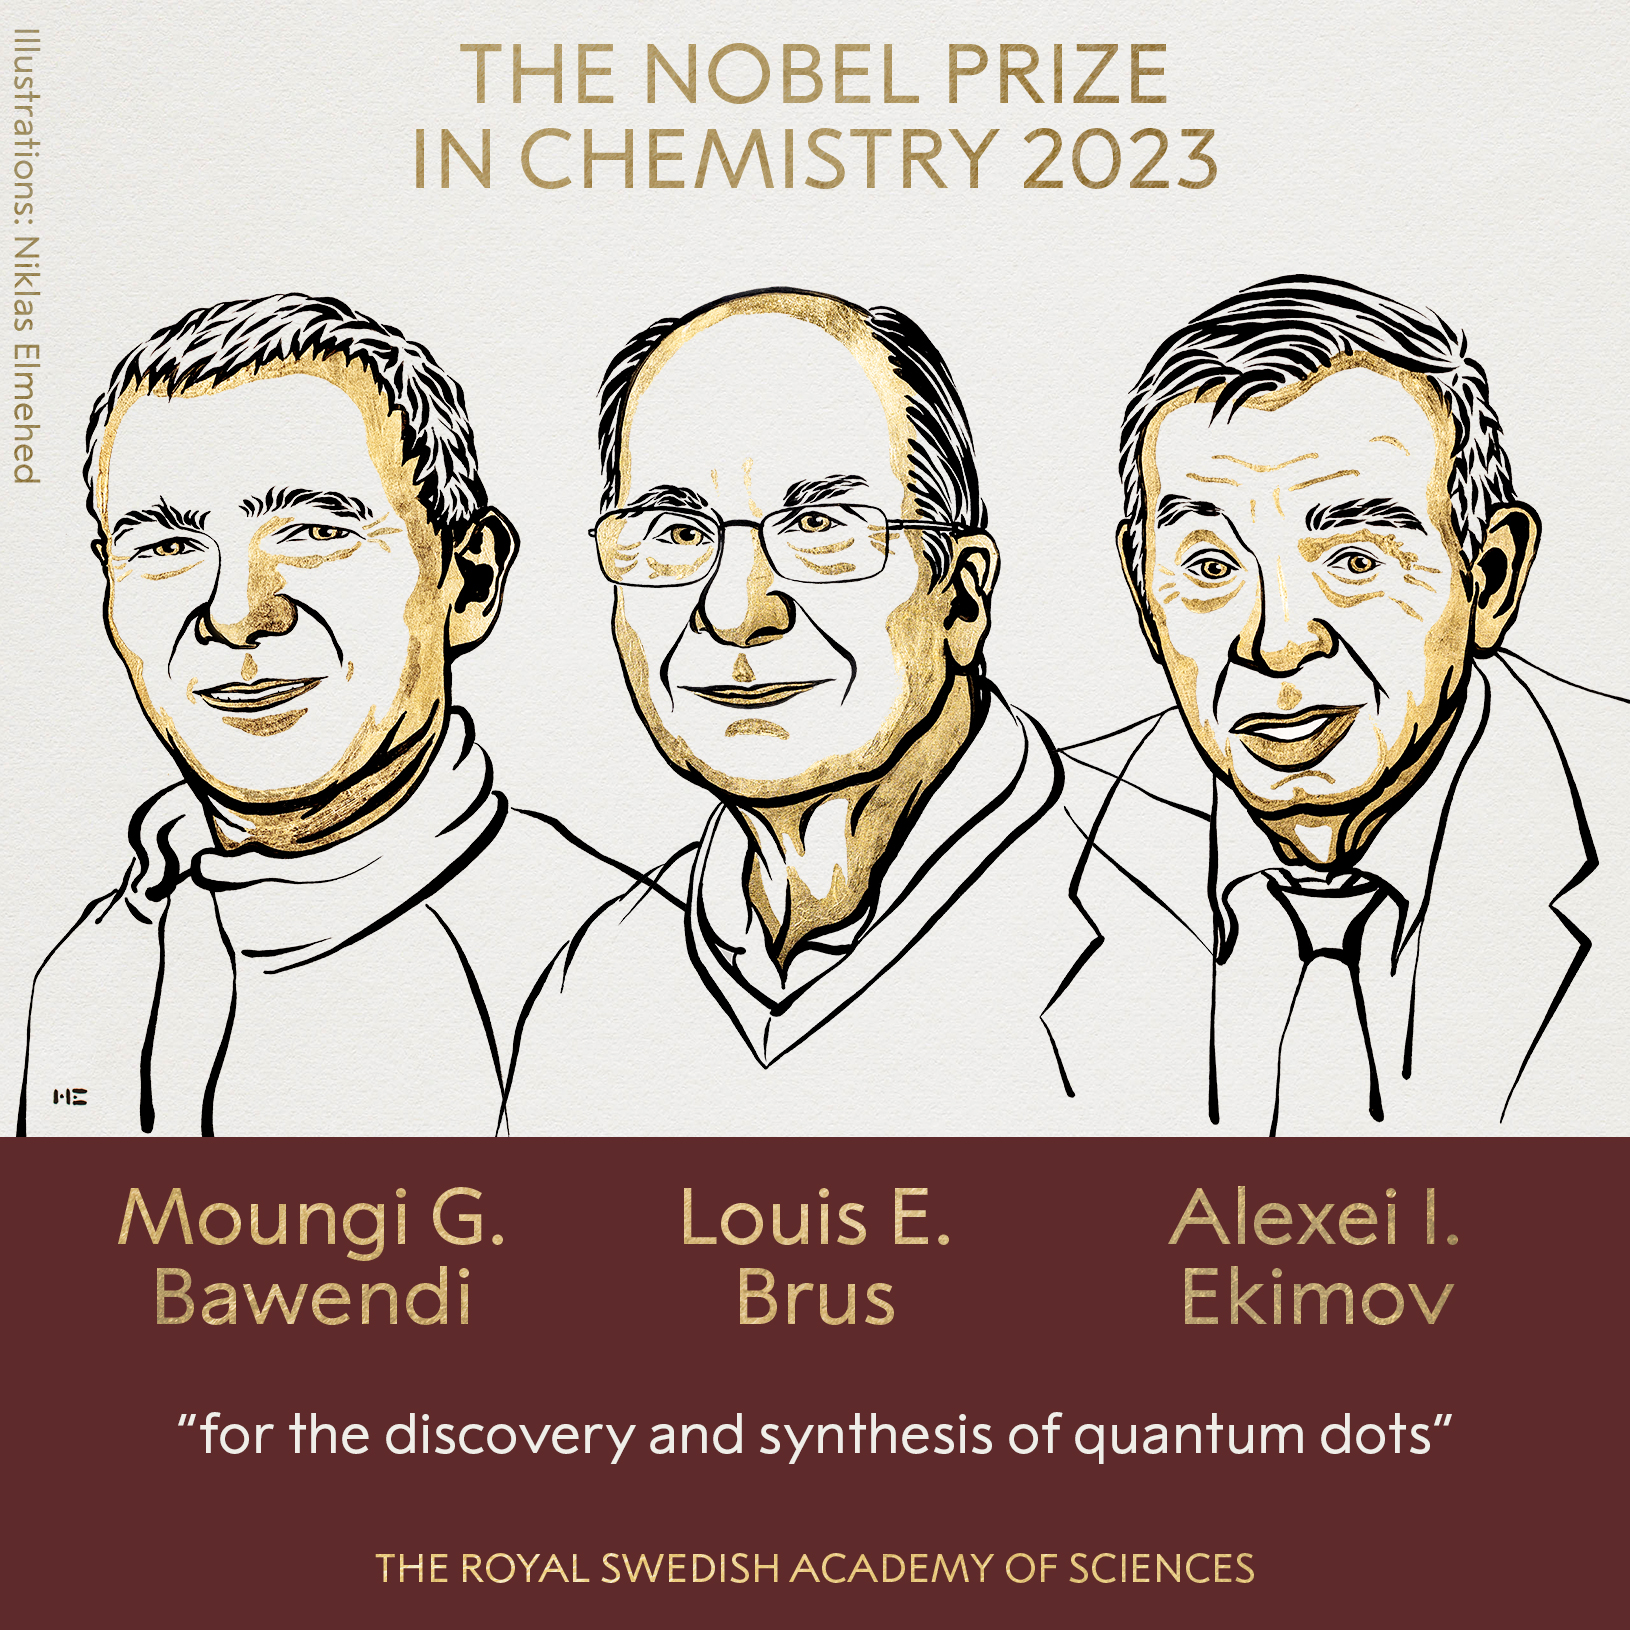 Imagem mostra os vencedores do Prêmio Nobel de Química deste ano.